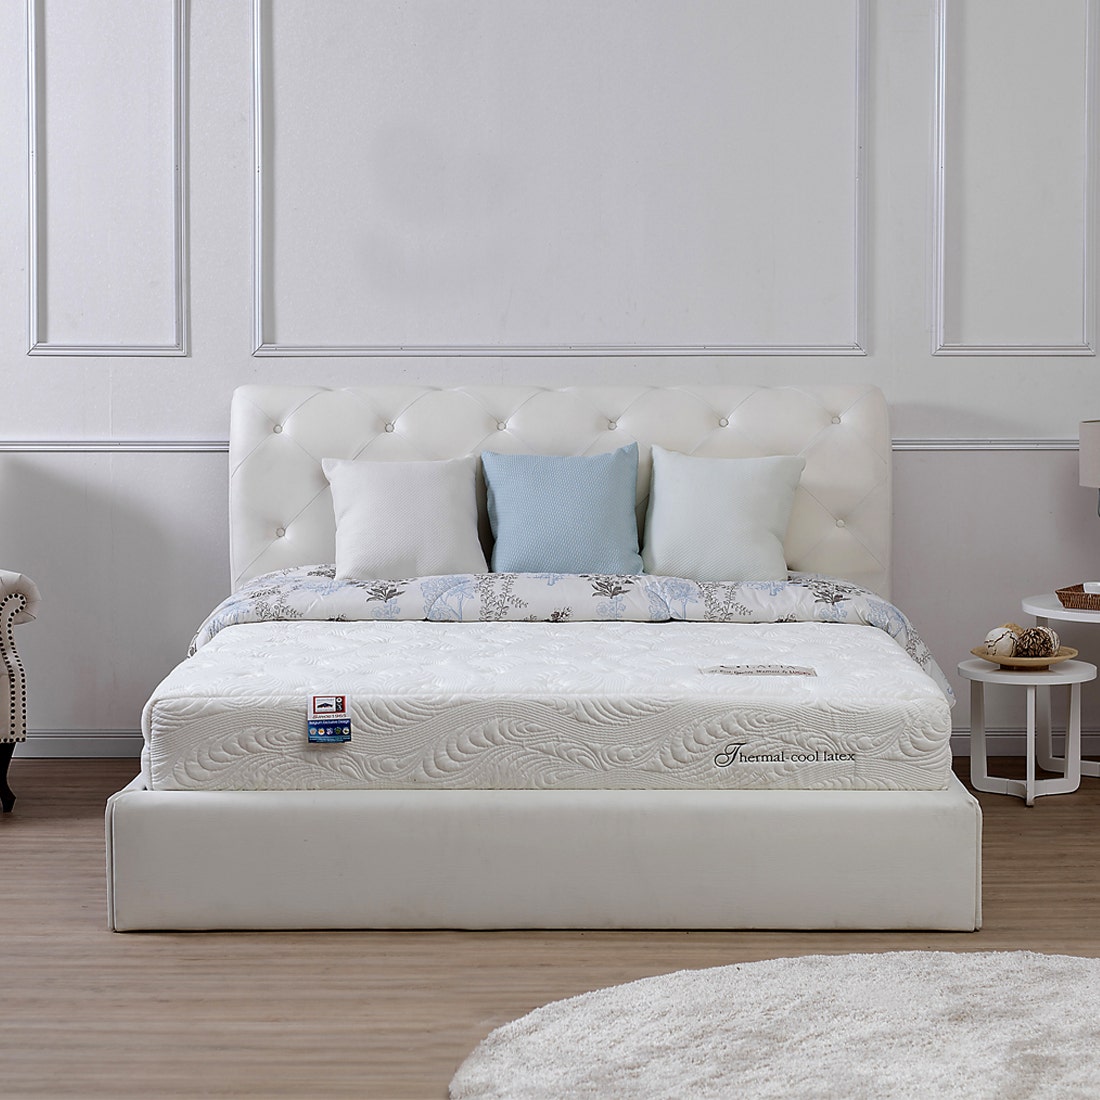 39001247-mattress-bedding-mattresses-latex-mattress-31